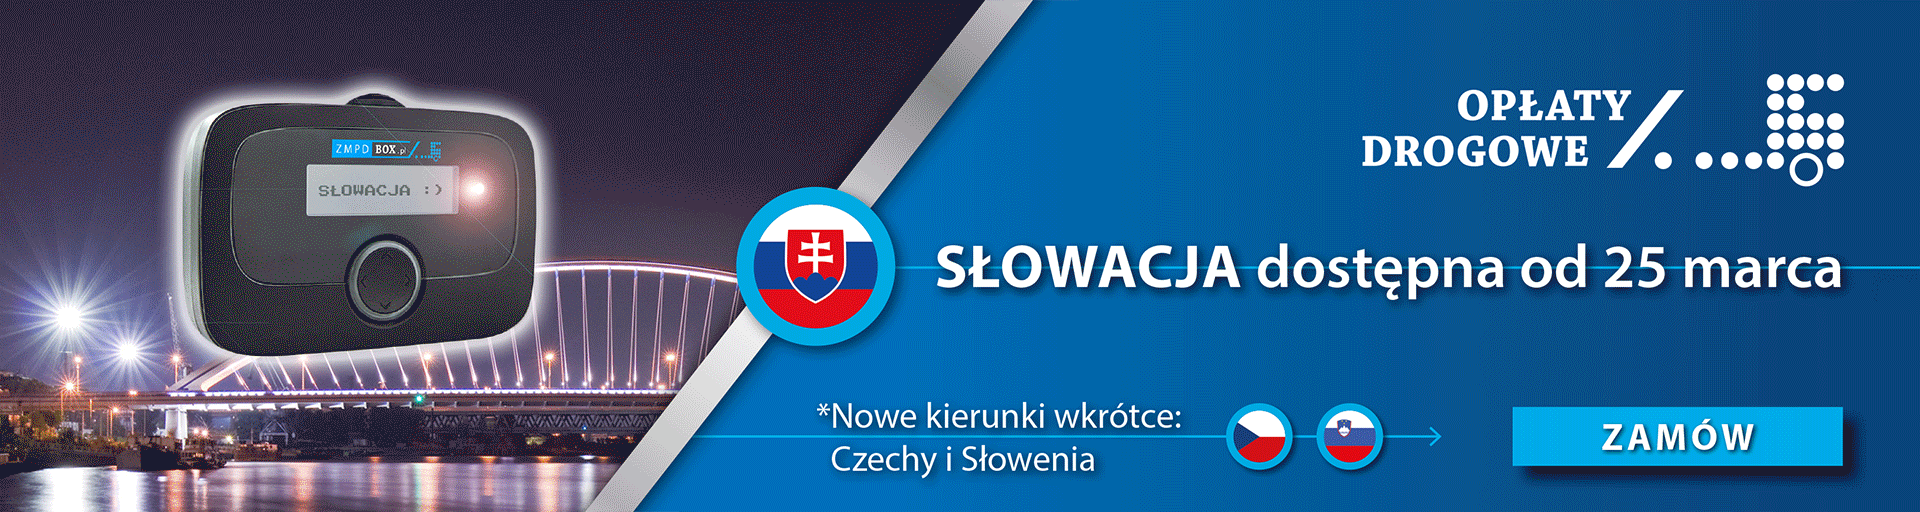 Słowacja dostępna od 25 marca